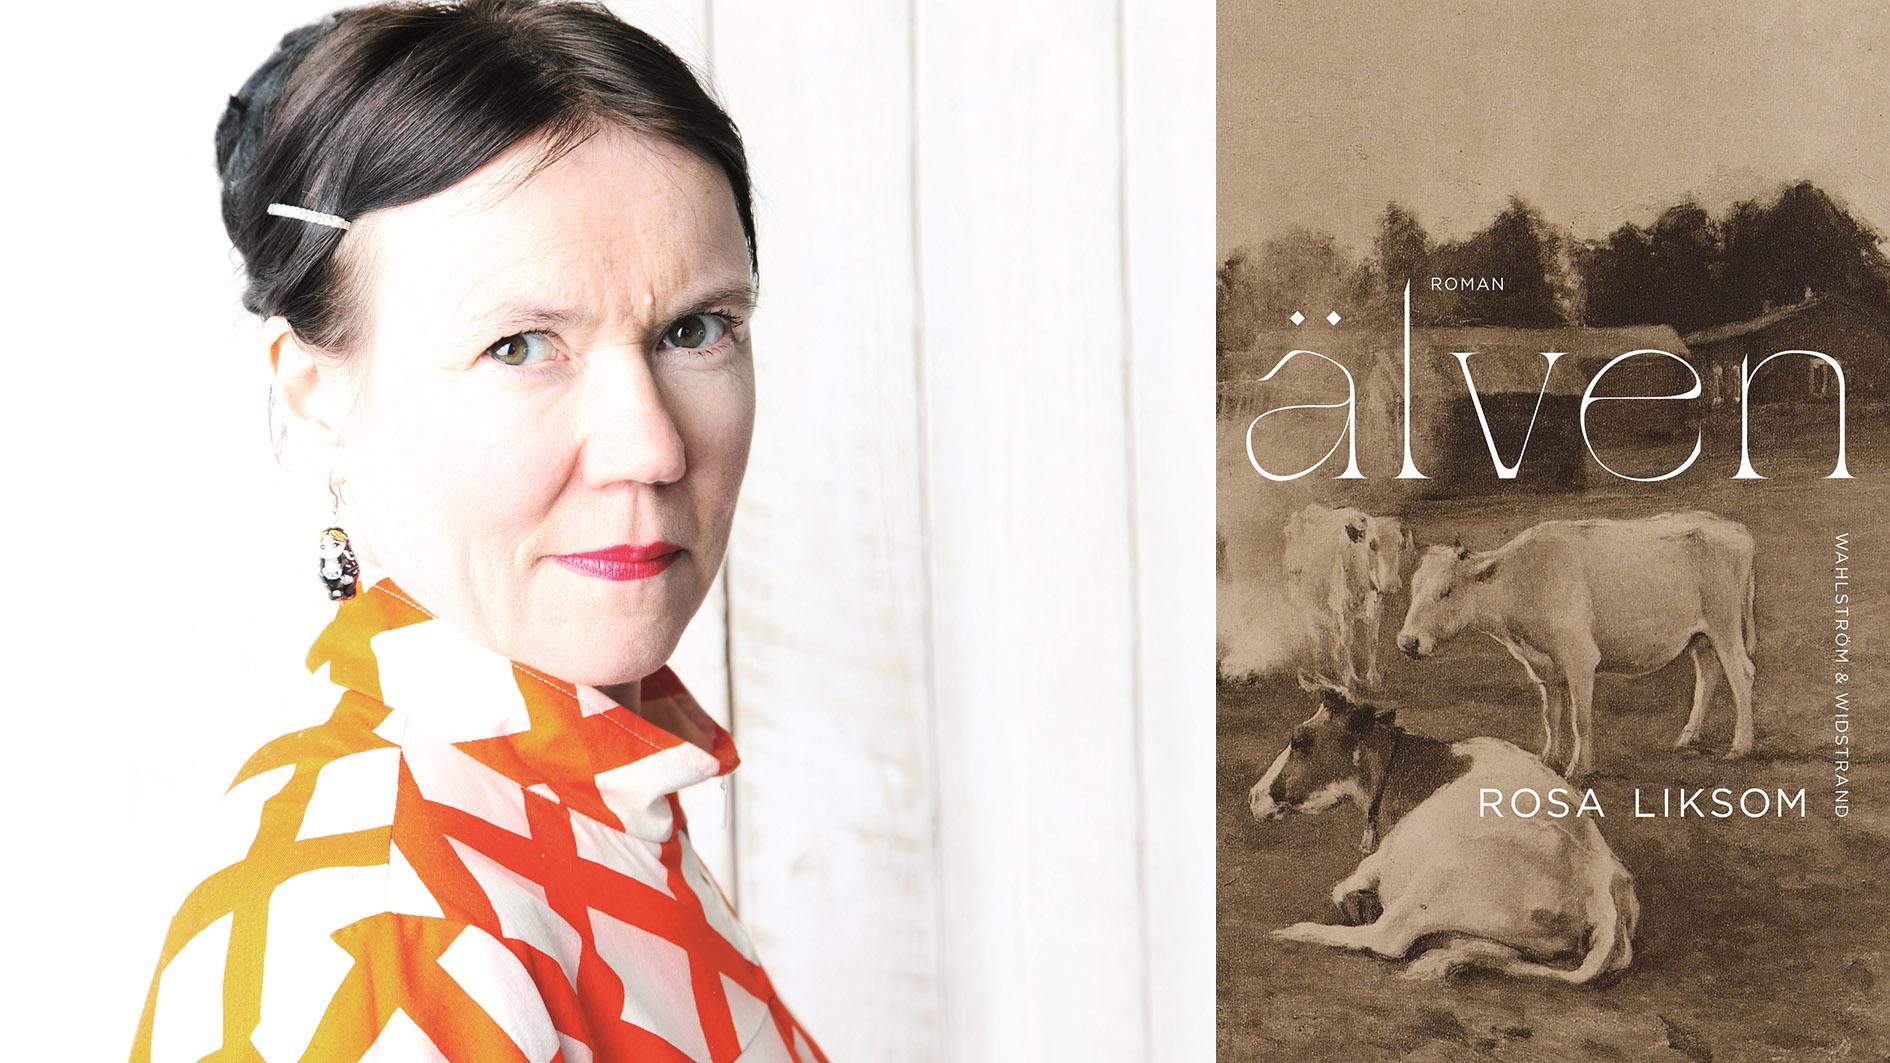 Rosa Liksom, pseudonym för Anni Ylävaara (född 1958), är en av Finlands största kulturpersonligheter, verksam som konstnär, författare, dramatiker och seriemakare. 2011 mottog hon Finlandiapriset för ”Kupé nr 6”. Hon är nu aktuell med romanen ”Älven”.